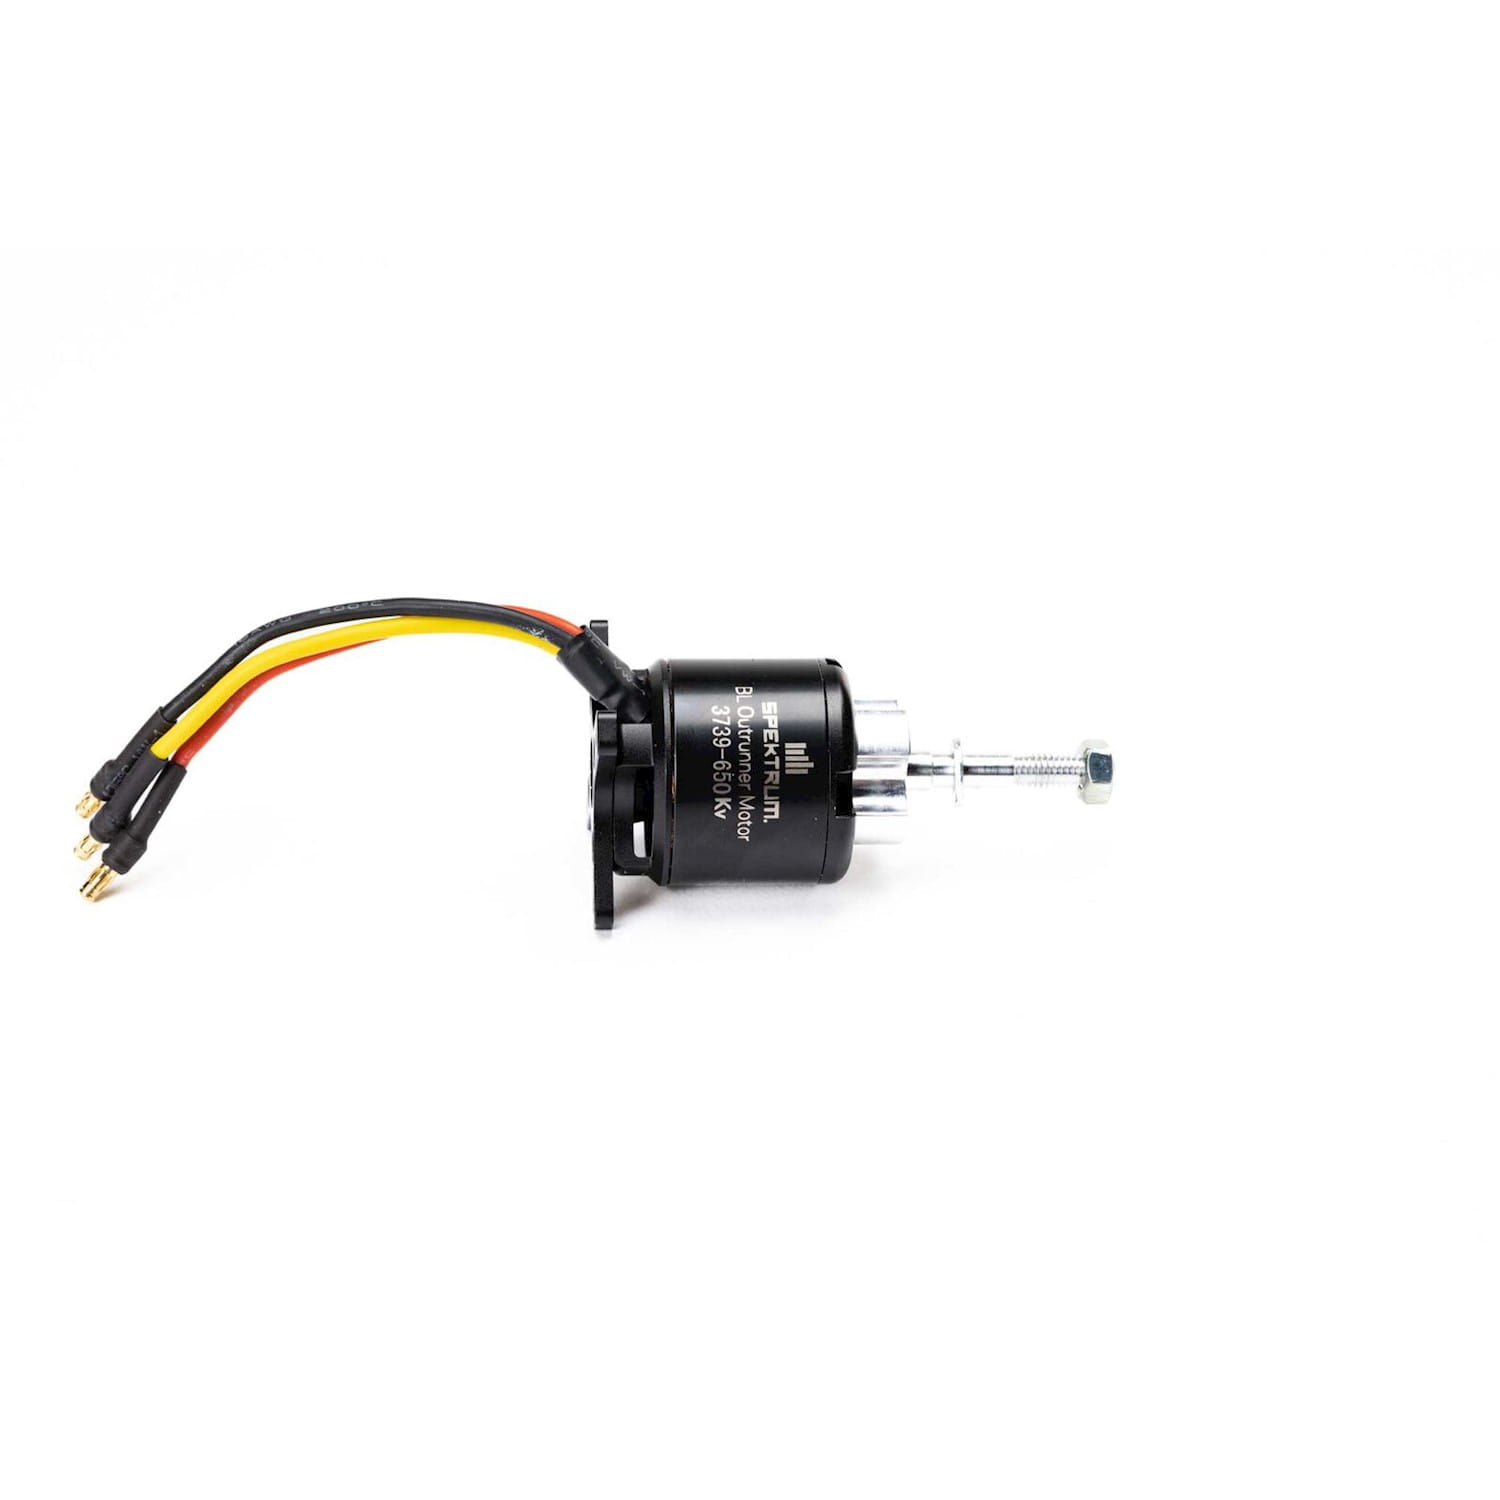 Spektrum Brushless Motor: 3730-650Kv 14-Pole